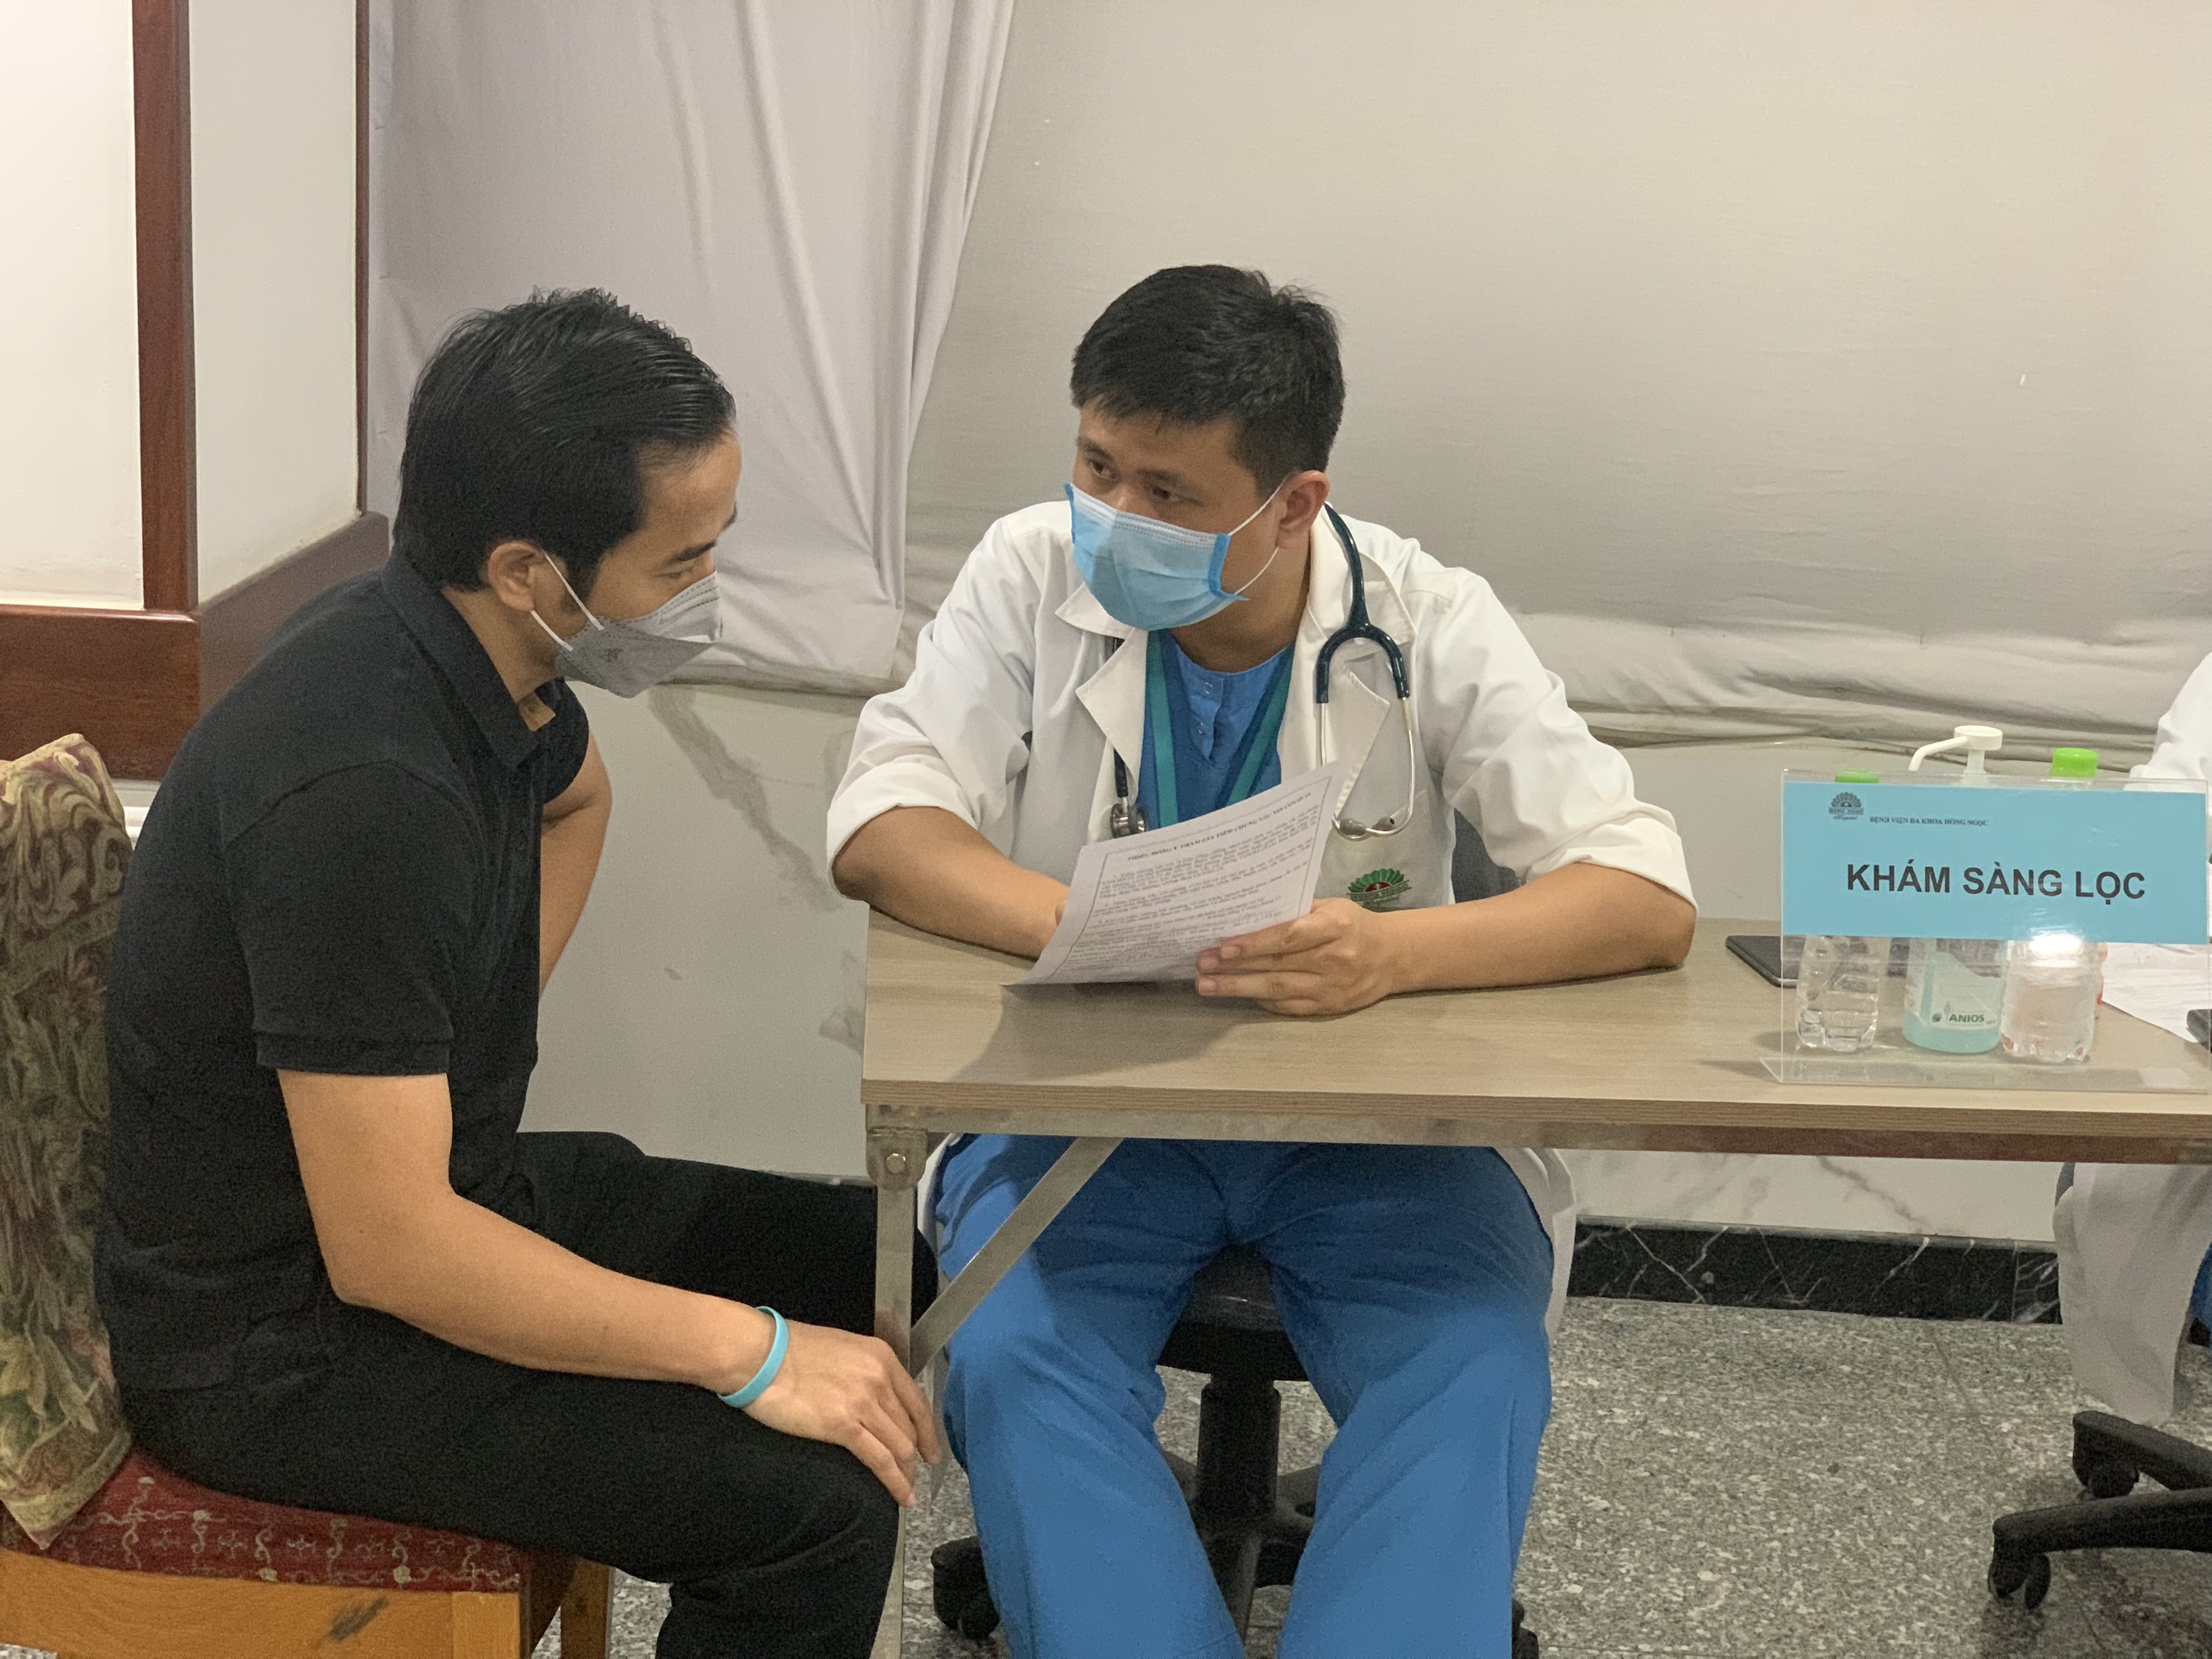 Chủ tịch UBND thành phố Hà Nội kêu gọi người dân thực hiện khai báo y tế thường xuyên